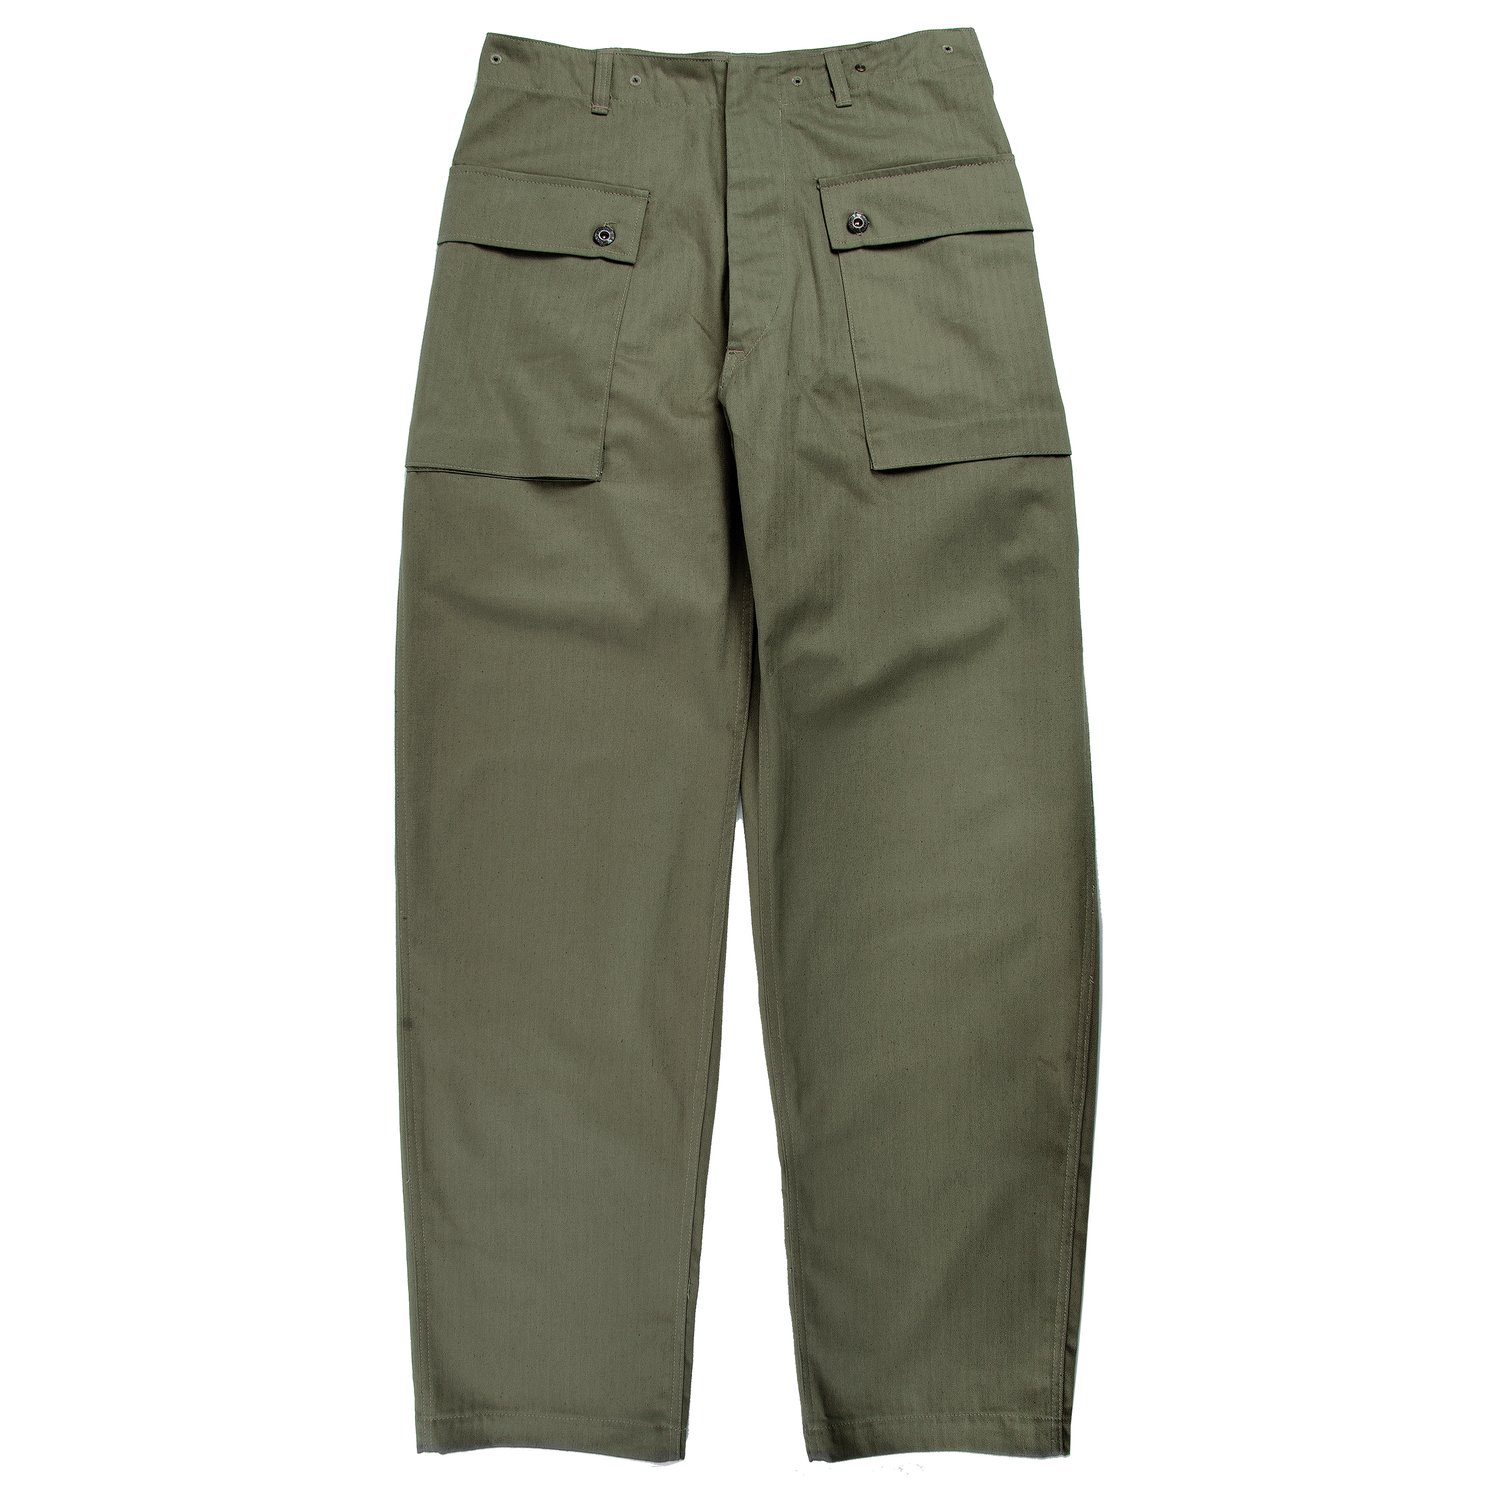 SM Wholesale USA — USMC M1944 HBT Butt Pocket Combat Pants